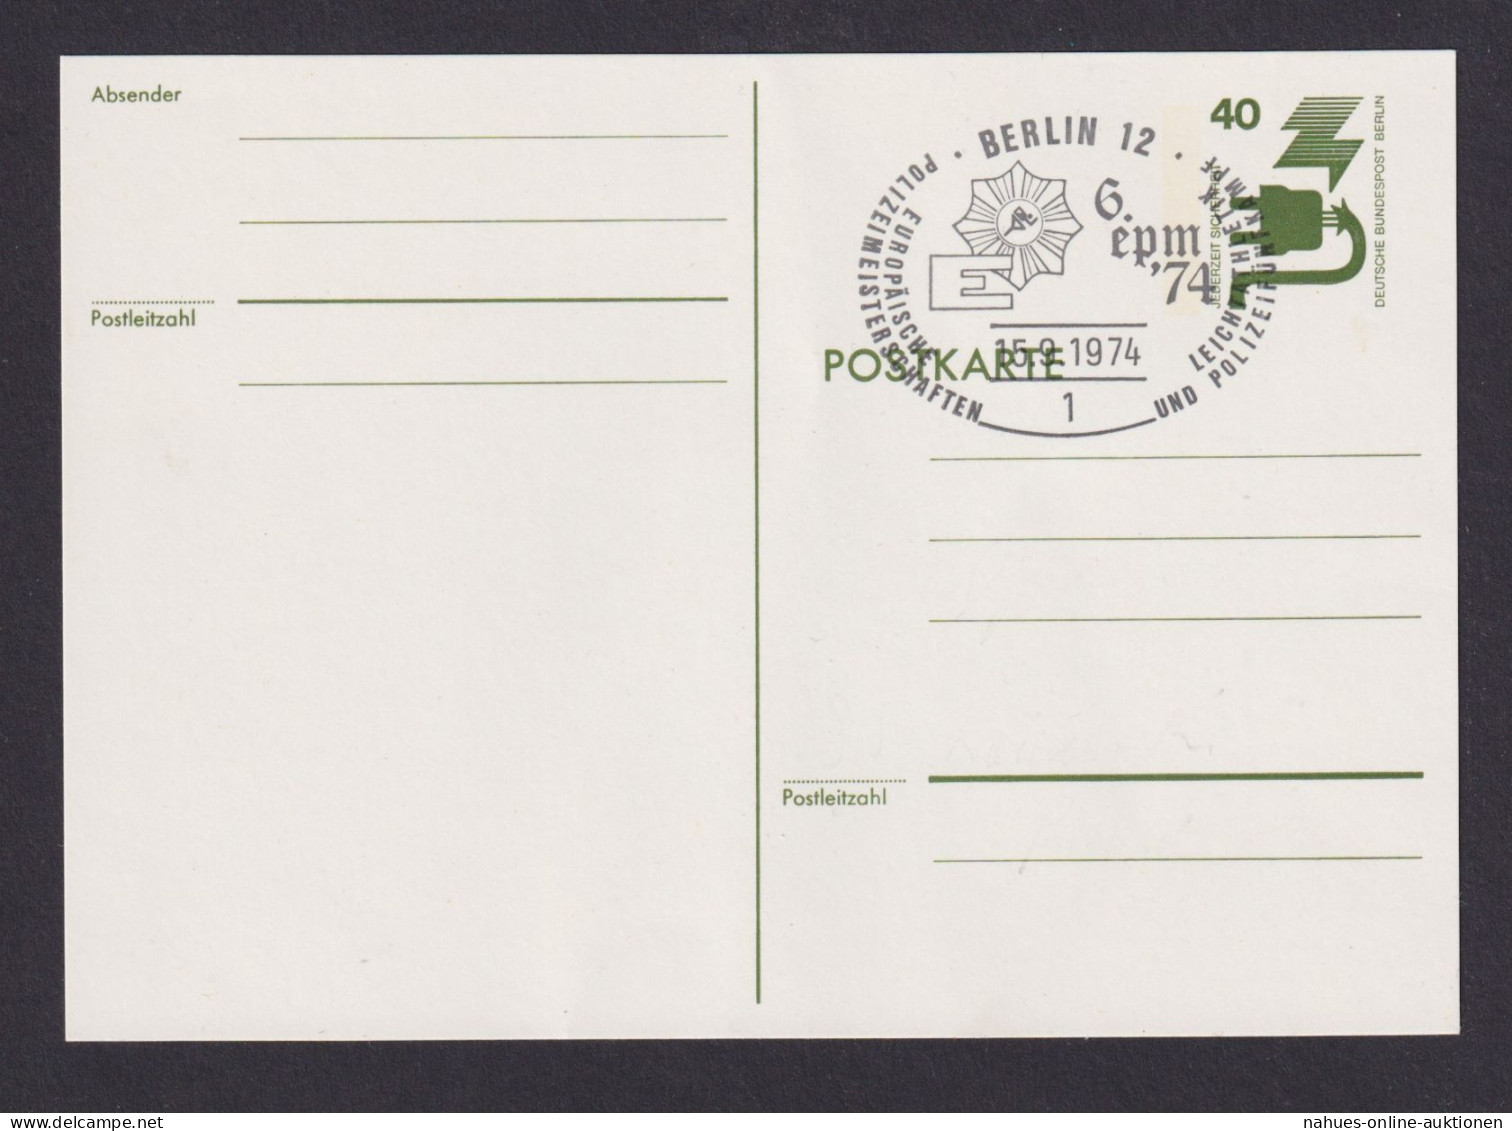 Briefmarken Berlin Ganzsache 40 Pfg. Unfallverhütung SST Berlin 12 Polizei - Covers & Documents